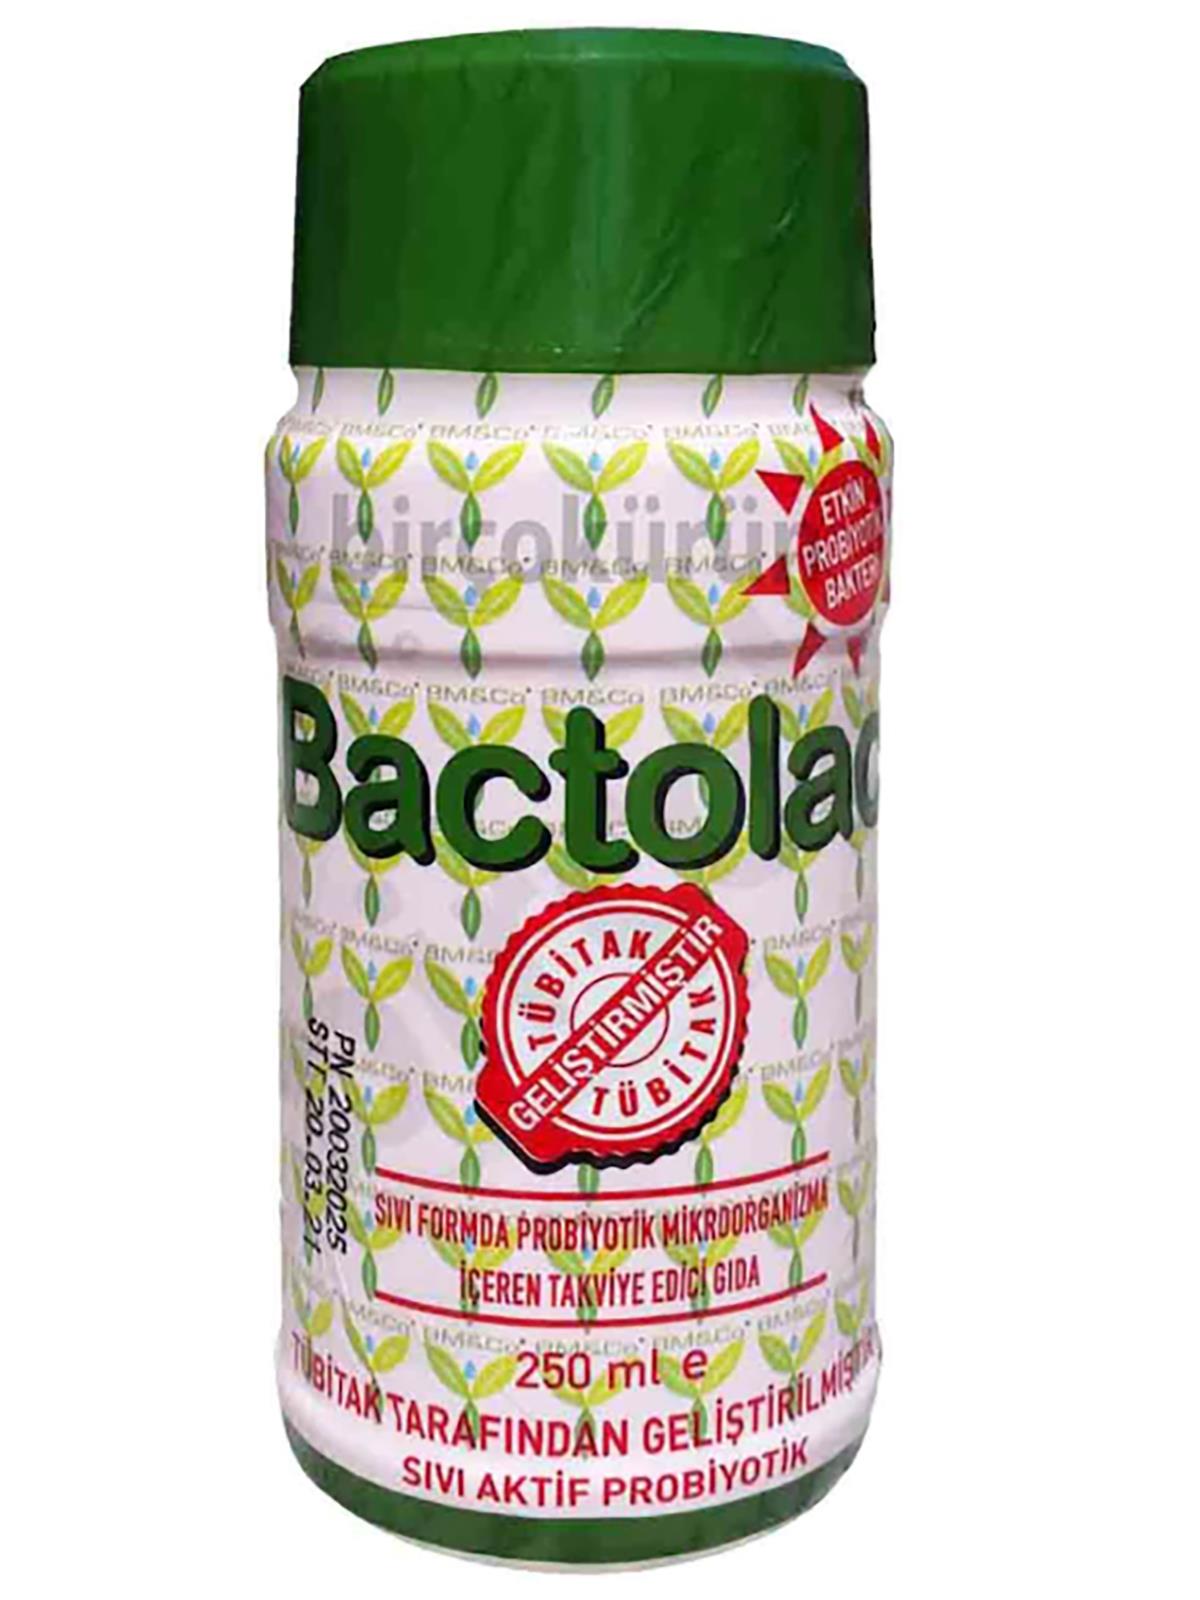 Bactolac Sıvı Formda Probiyotik Mikroorganizma İçeren Takviye Edici Gıda 250 ml